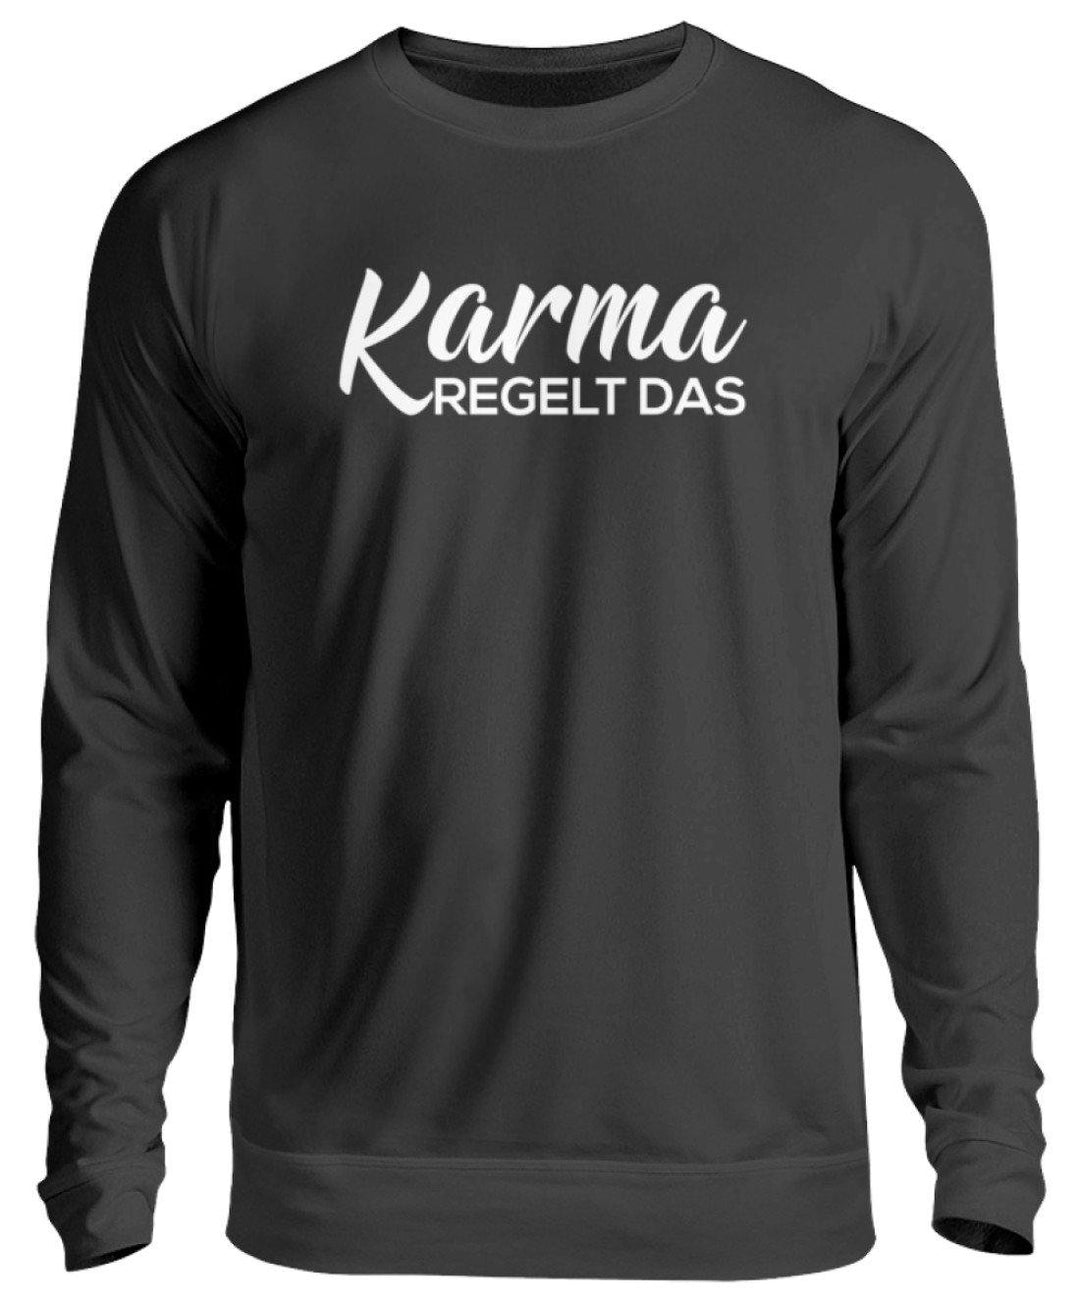 Karma regelt das - Words on Shirts  - Unisex Pullover - Words on Shirts Sag es mit dem Mittelfinger Shirts Hoodies Sweatshirt Taschen Gymsack Spruch Sprüche Statement